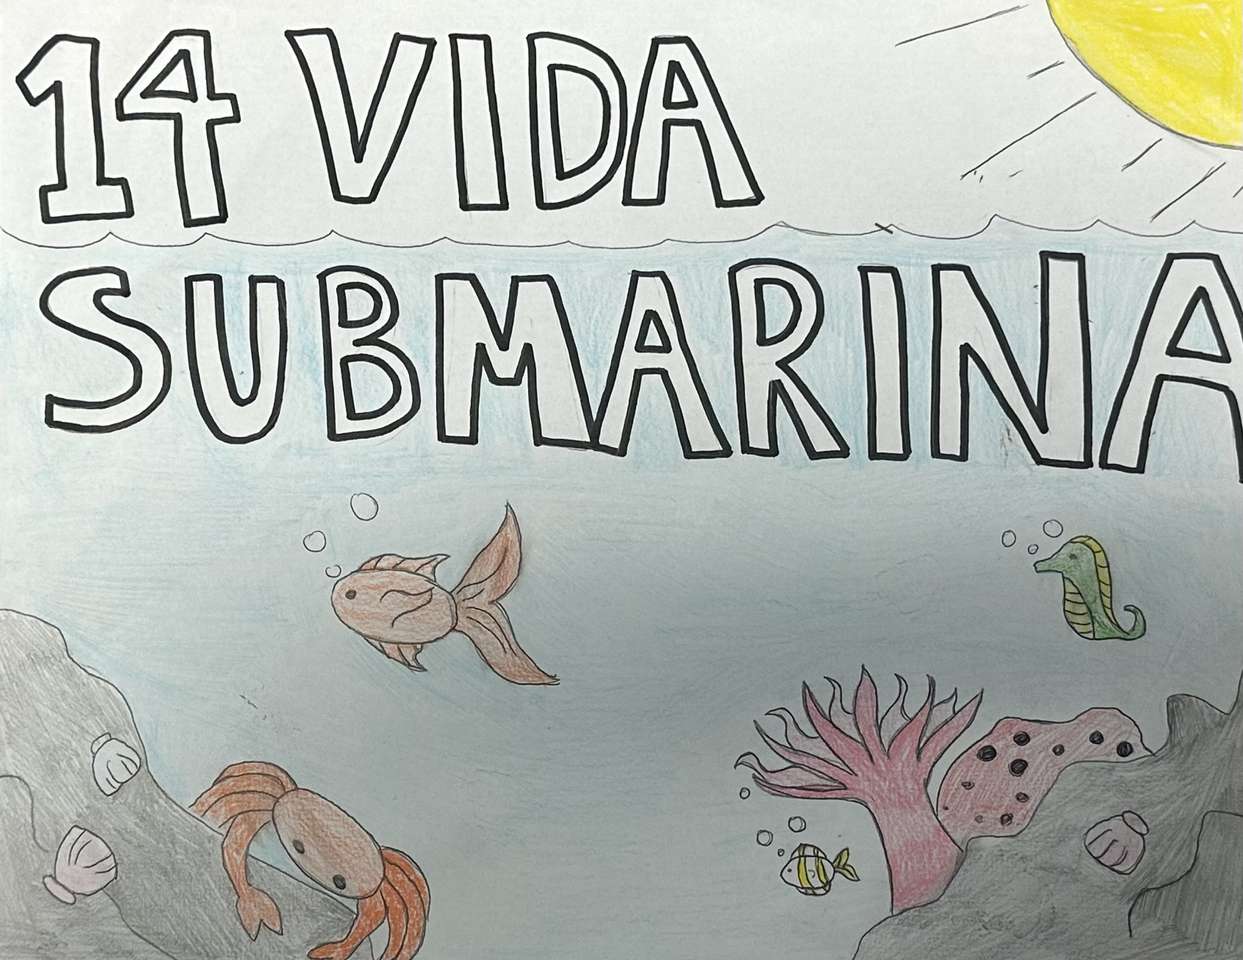 Cele zrównoważonego rozwoju 14 Vida Submarina puzzle online